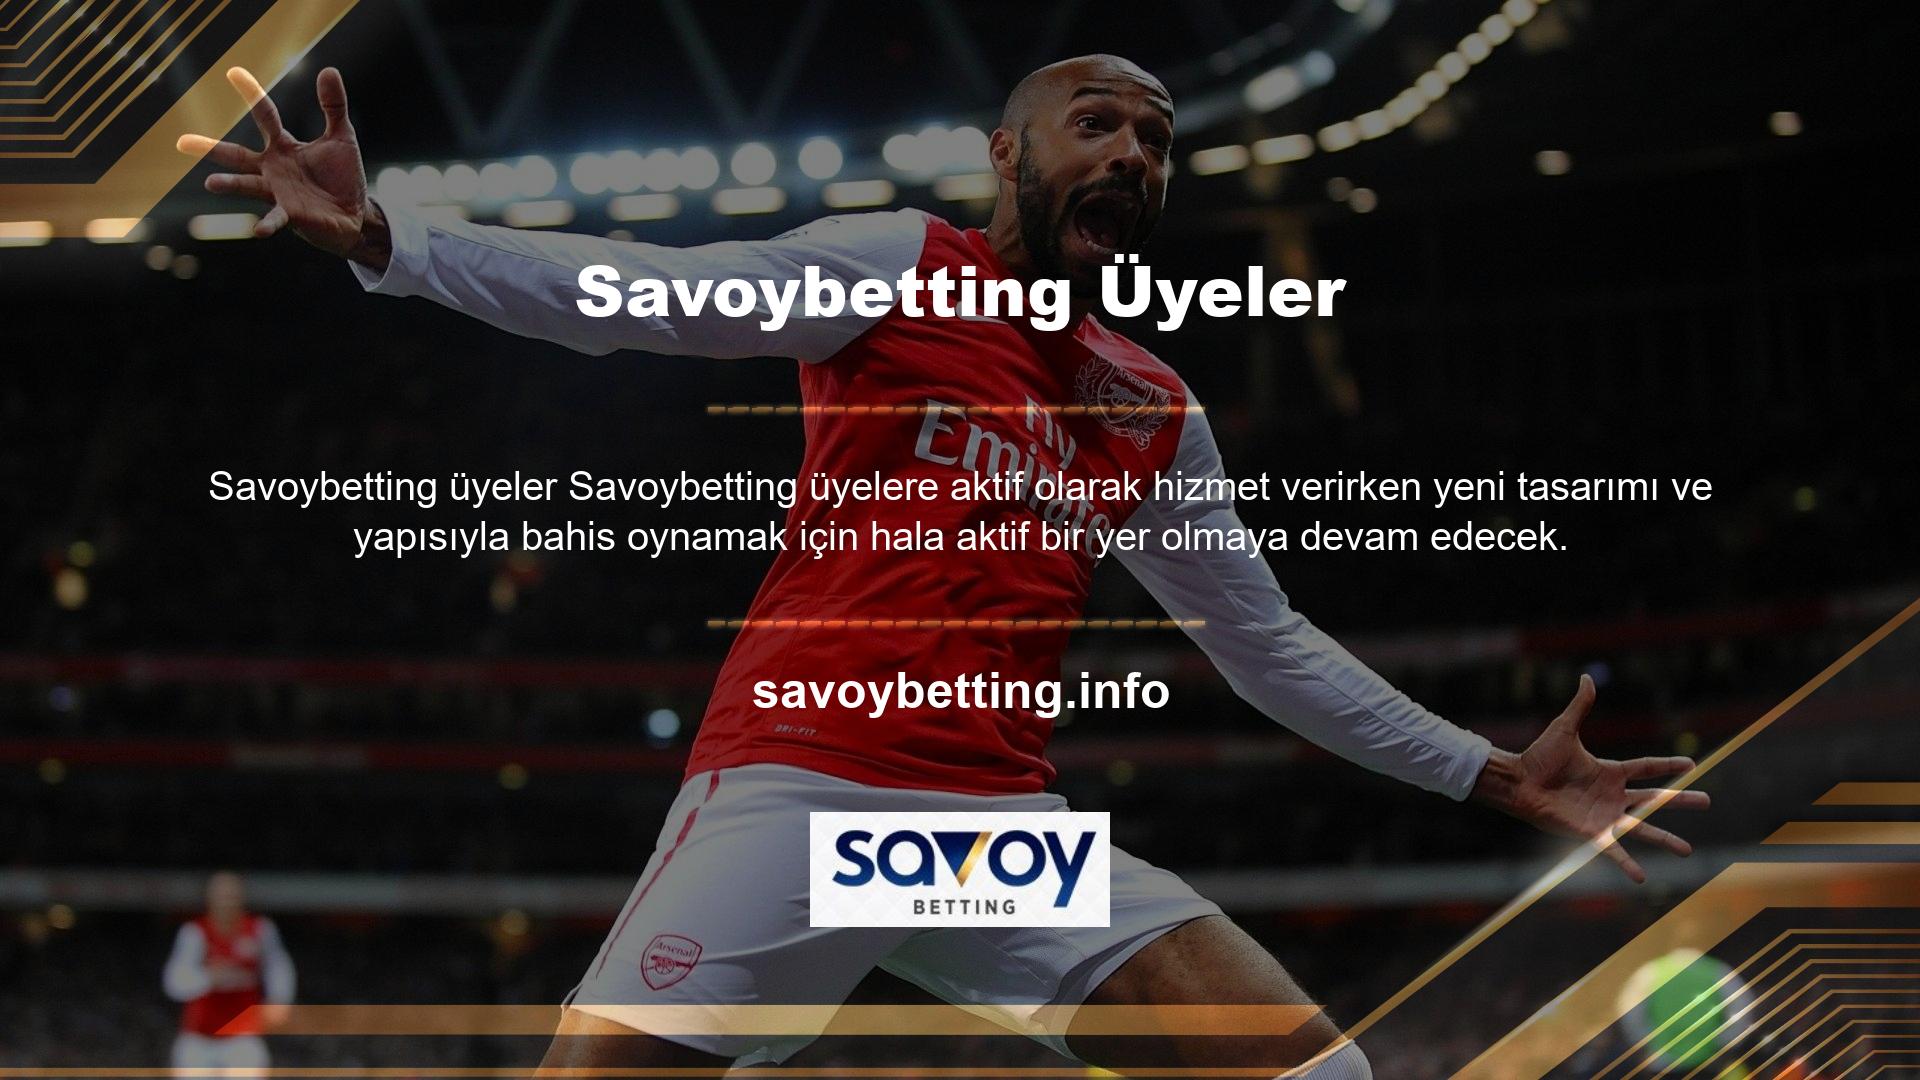 Savoybetting oyun alanlarında spor bahisleri, casino oyunları, canlı oyunlar ve sanal oyunlar mevcuttur